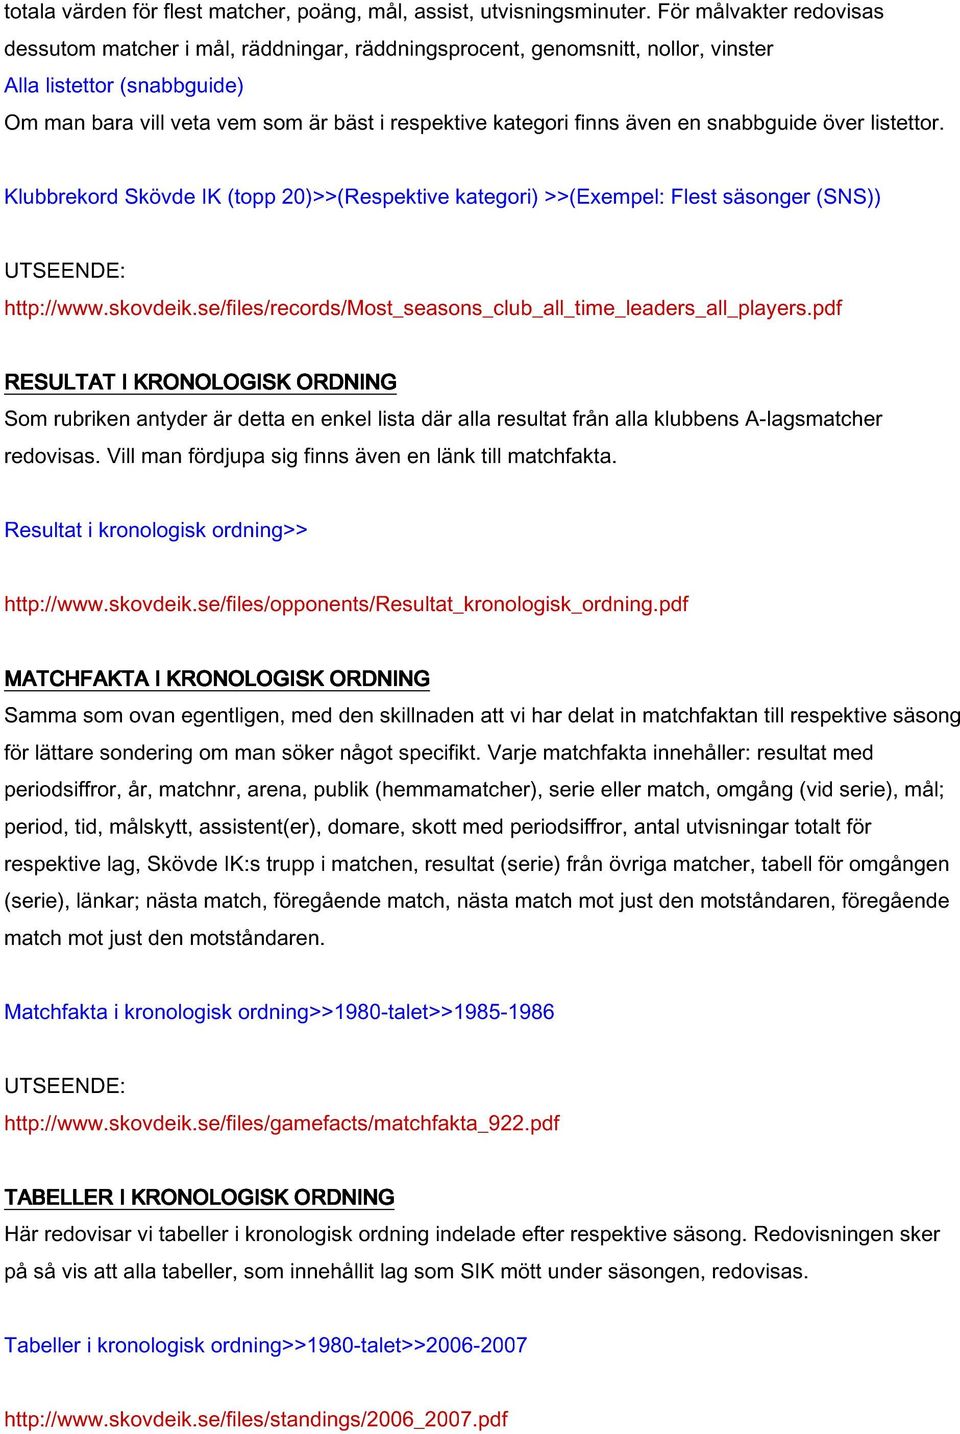 även en snabbguide över listettor. Klubbrekord Skövde IK (topp 20)>>(Respektive kategori) >>(Exempel: Flest säsonger (SNS)) http://www.skovdeik.